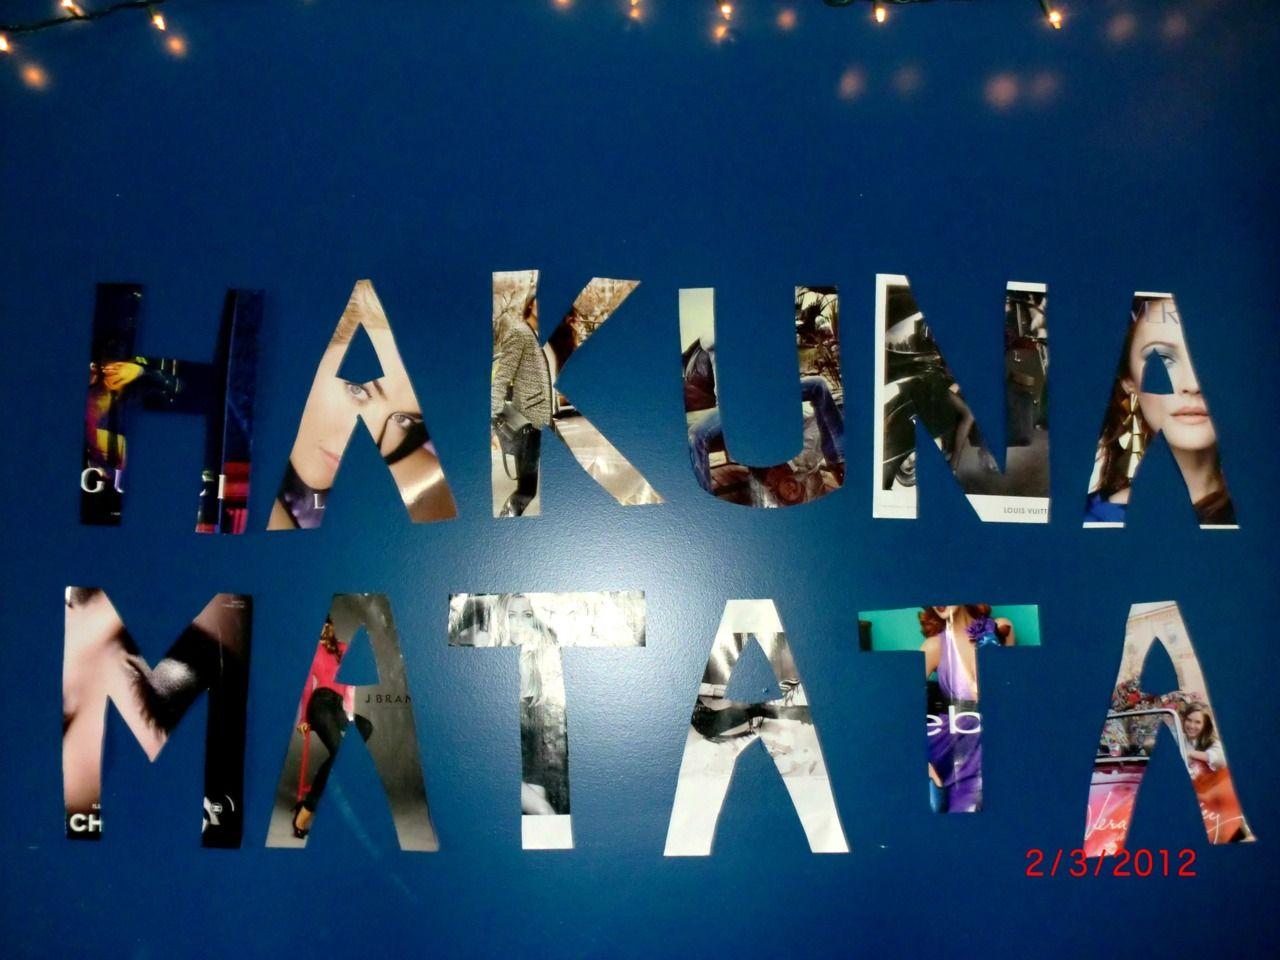 What You Should Wear To Hakuna Matata Wallpaper. hakuna matata